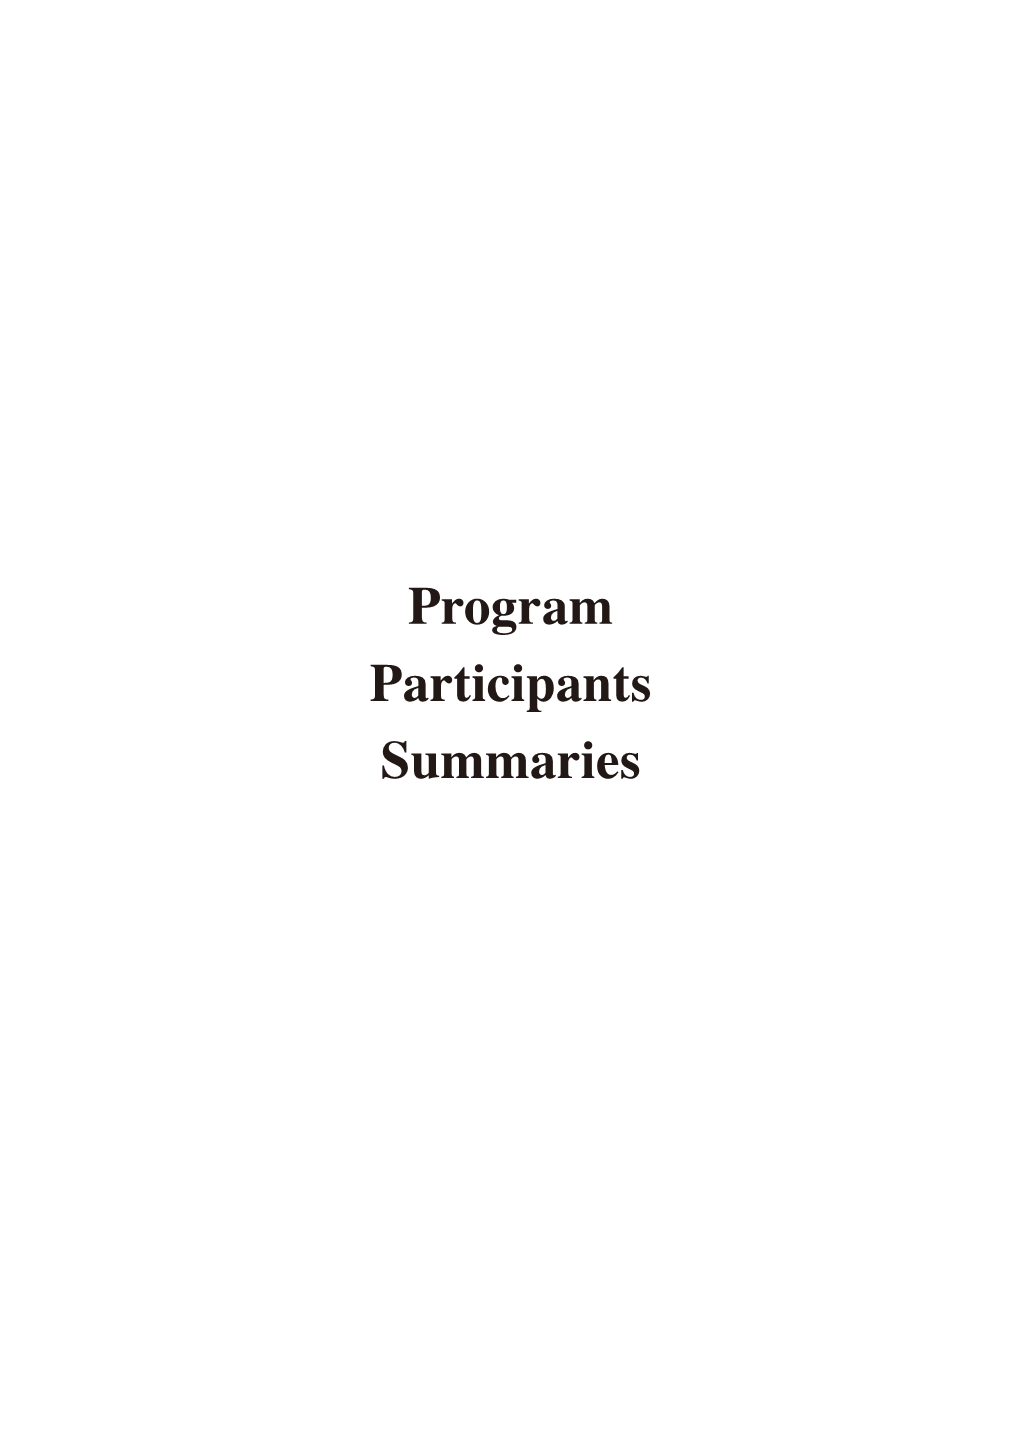 Program Participants Summaries